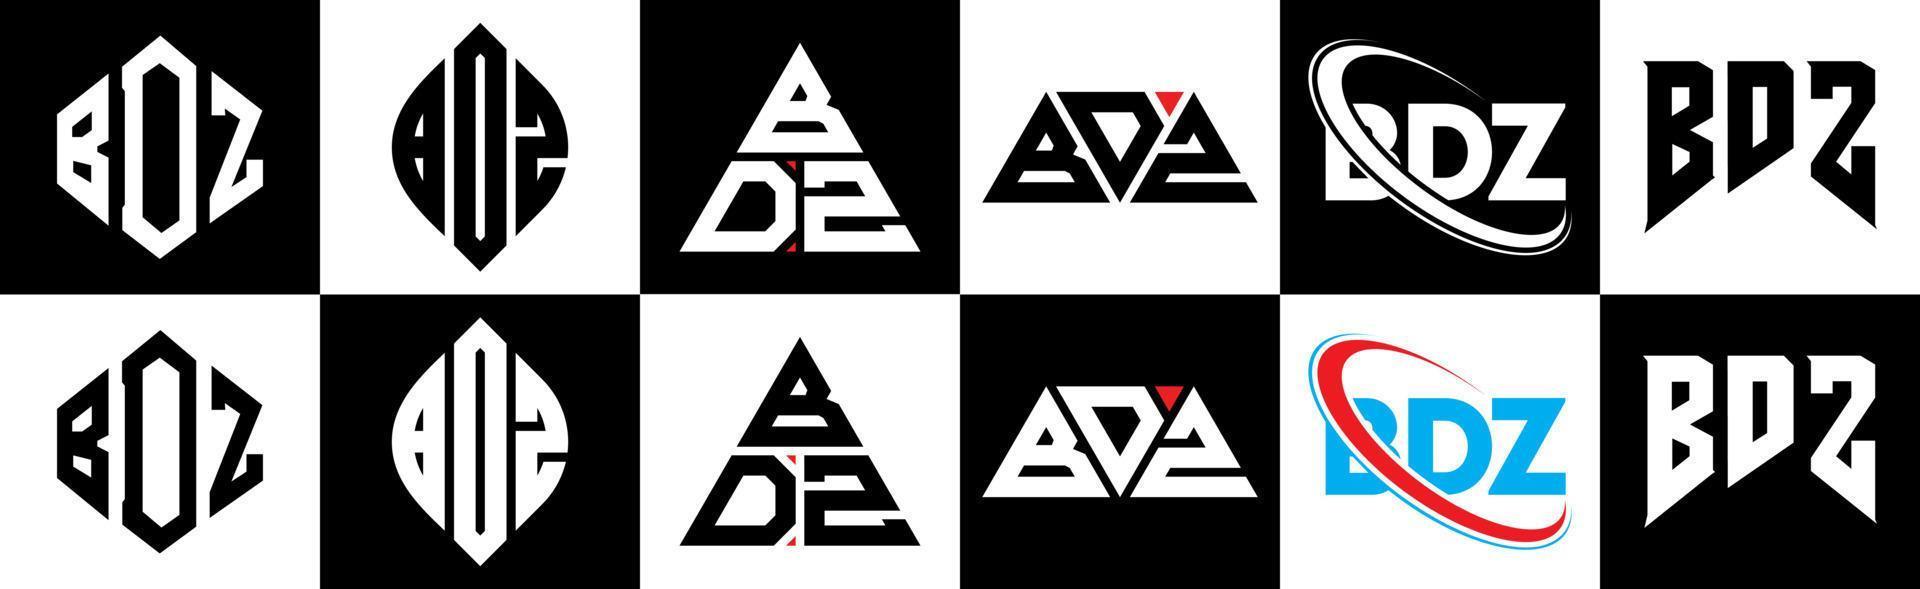 bdz-Buchstaben-Logo-Design in sechs Stilen. bdz polygon, kreis, dreieck, hexagon, flacher und einfacher stil mit schwarz-weißem buchstabenlogo in einer zeichenfläche. bdz minimalistisches und klassisches Logo vektor